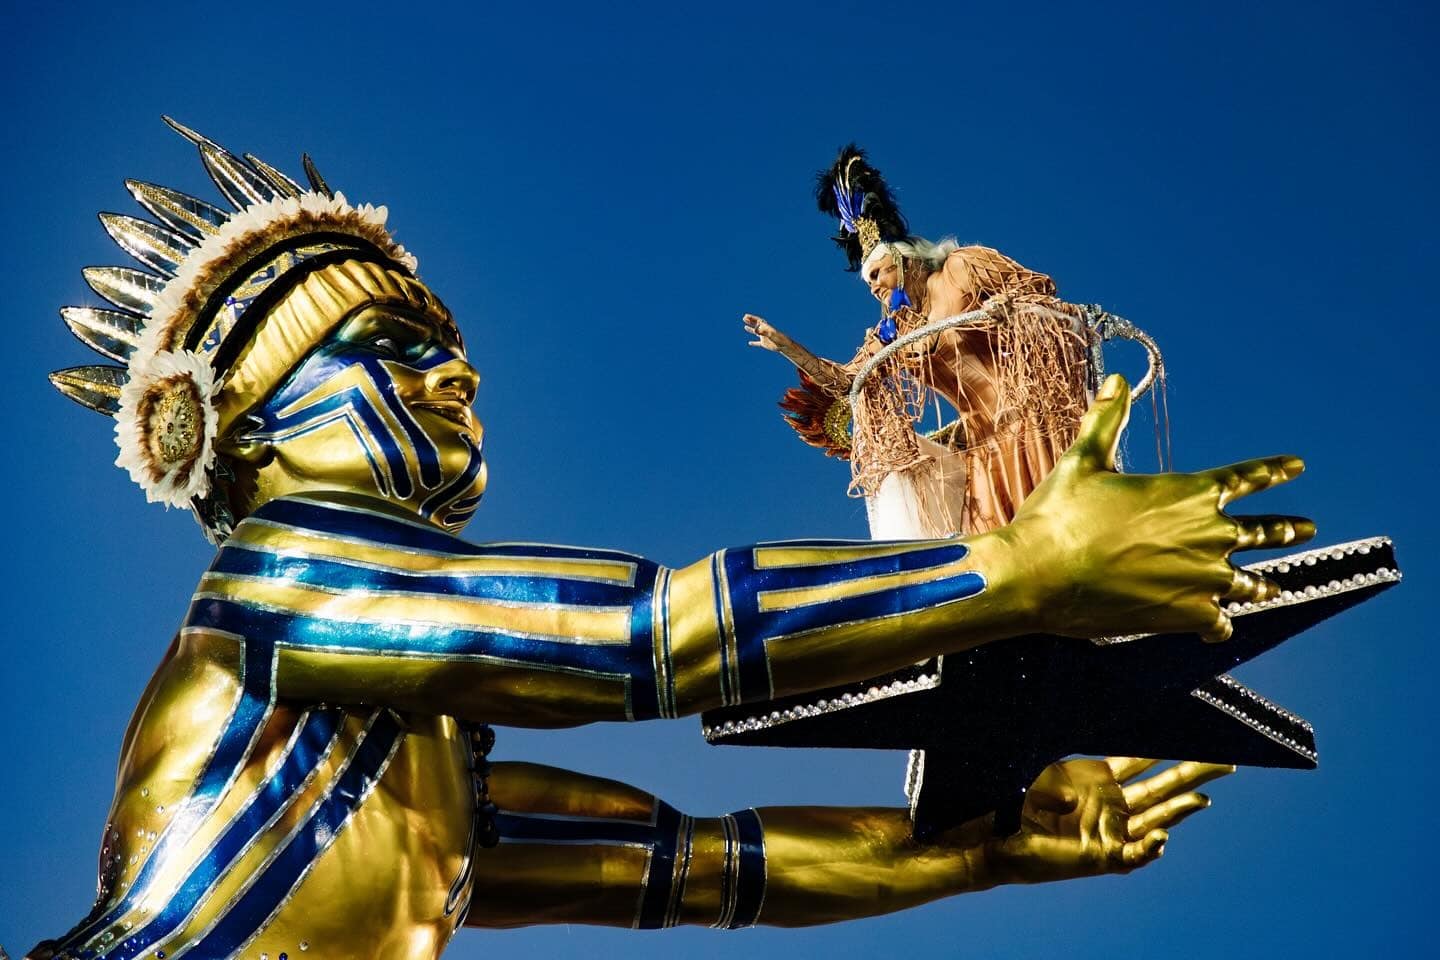 VÍDEO: O julgamento de alegoria e fantasia no Carnaval de SP